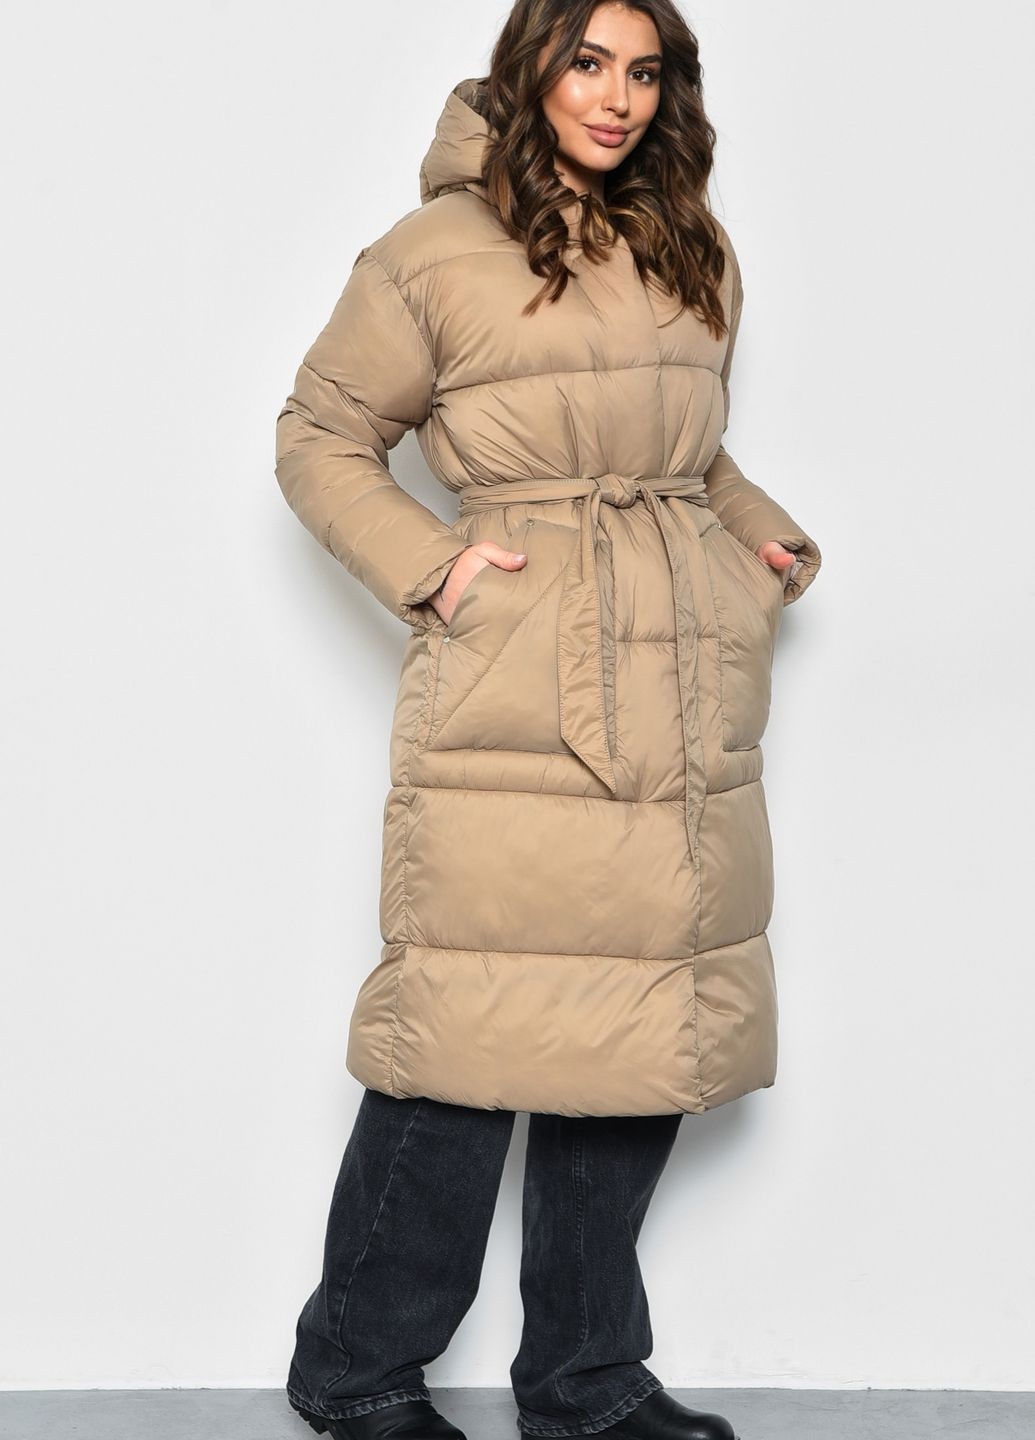 Бежевая зимняя куртка женская еврозима бежевого цвета с поясом Let's Shop